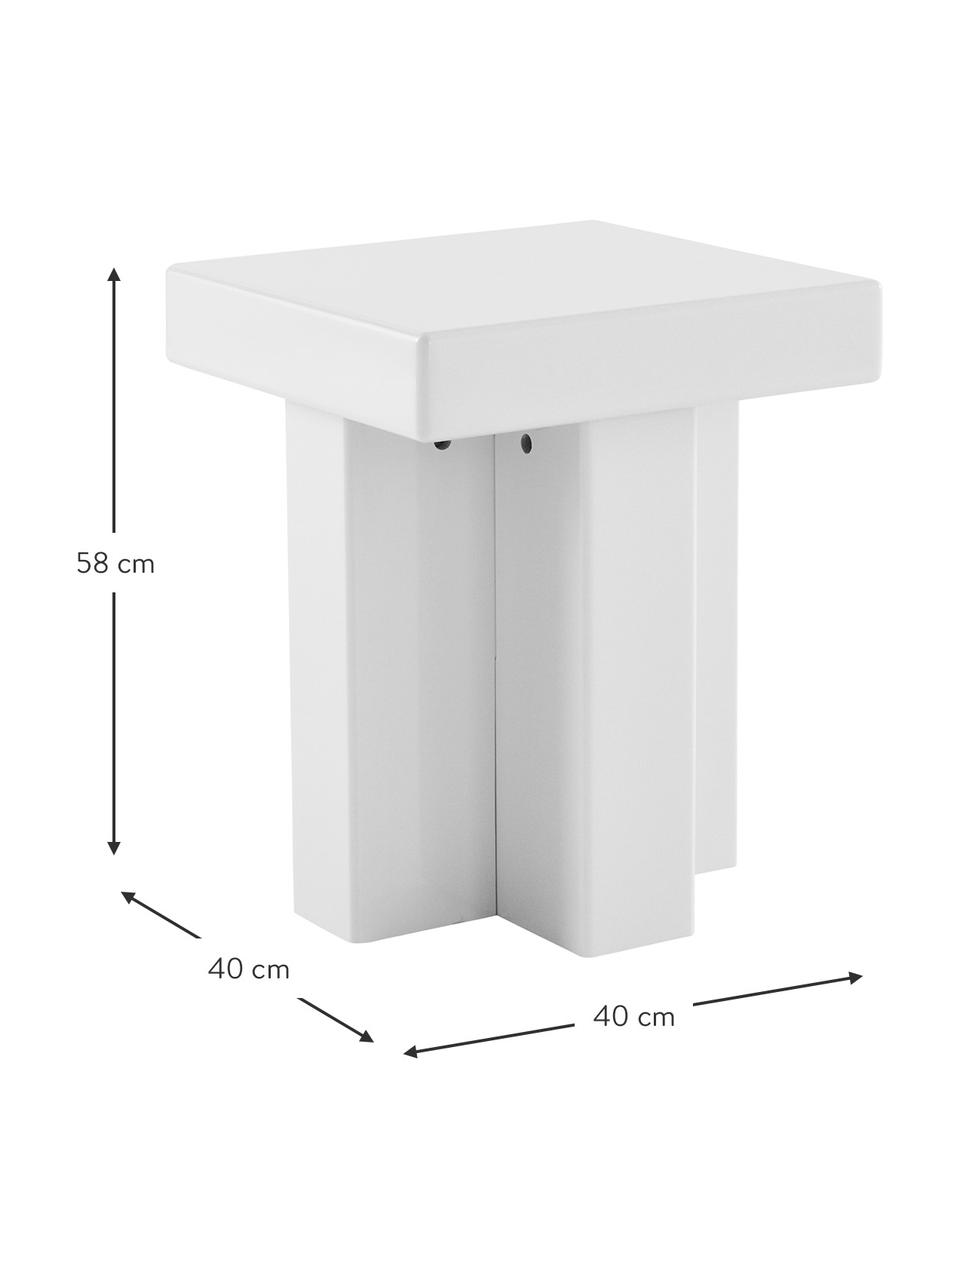 Odkládací stolek Crozz, Lakovaná MDF deska (dřevovláknitá deska střední hustoty), Dřevo, lakováno bílou barvou, Š 40 cm, V 58 cm